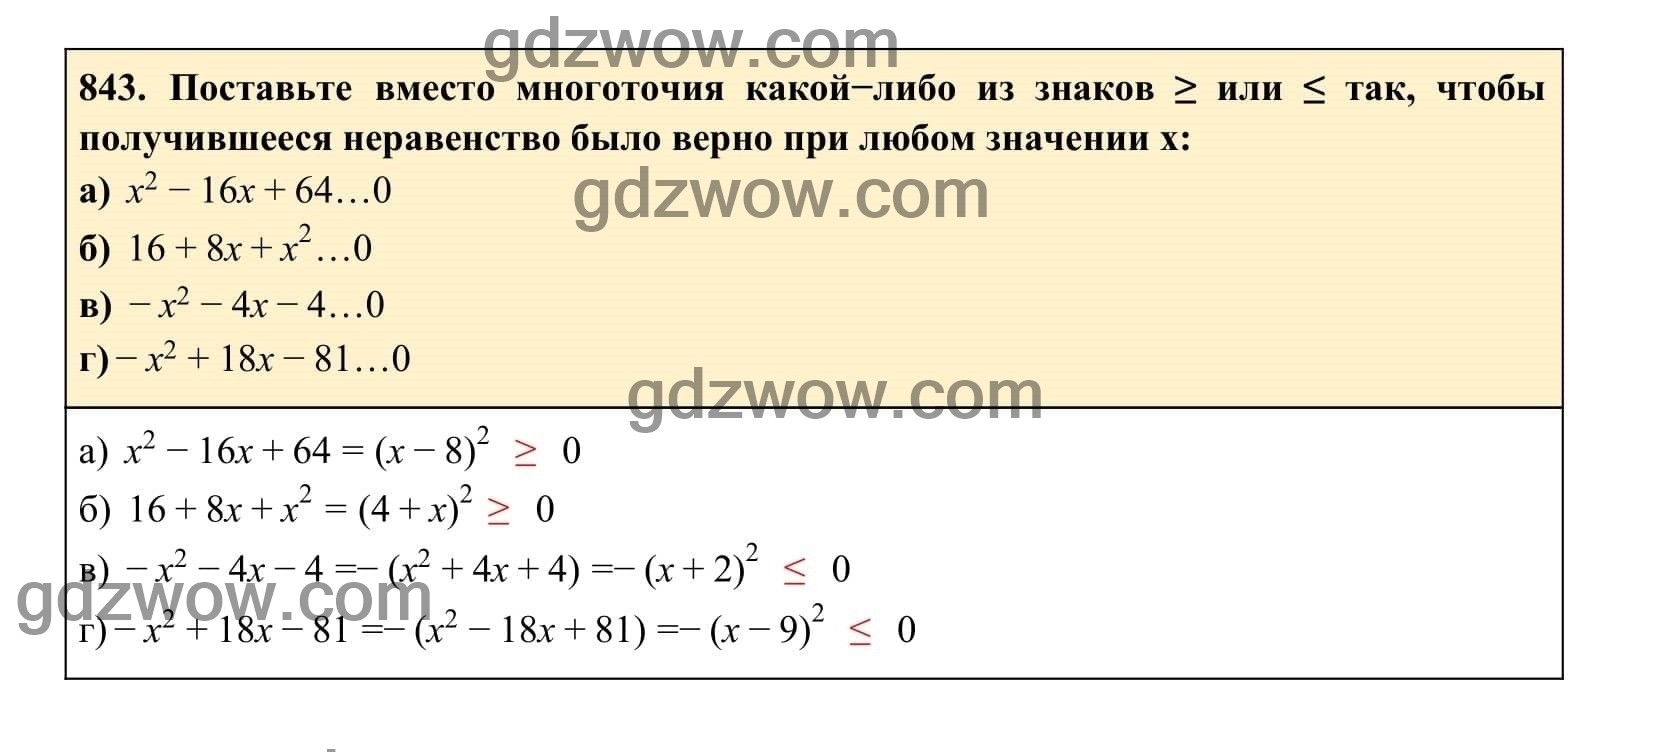 Упражнение 843 - ГДЗ по Алгебре 7 класс Учебник Макарычев (решебник) - GDZwow